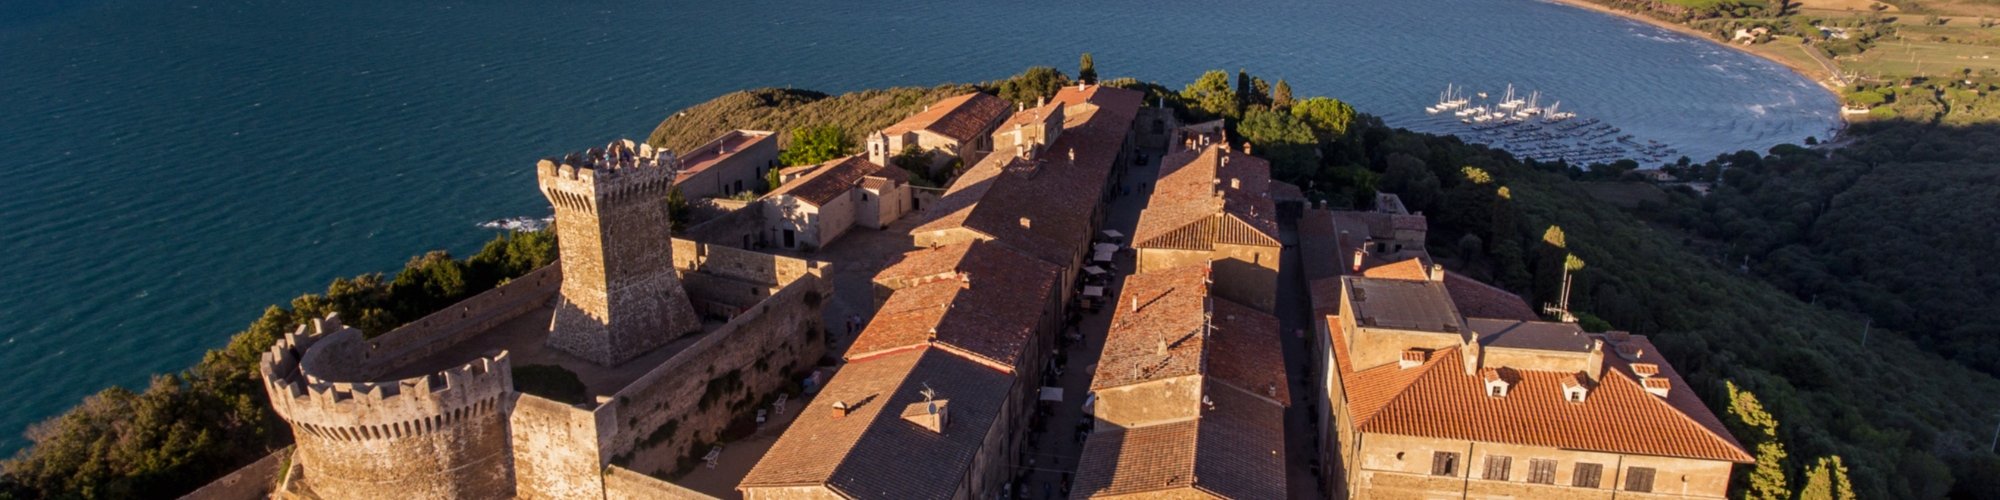 Die Rocca di Populonia von einer Drohne aus gesehen